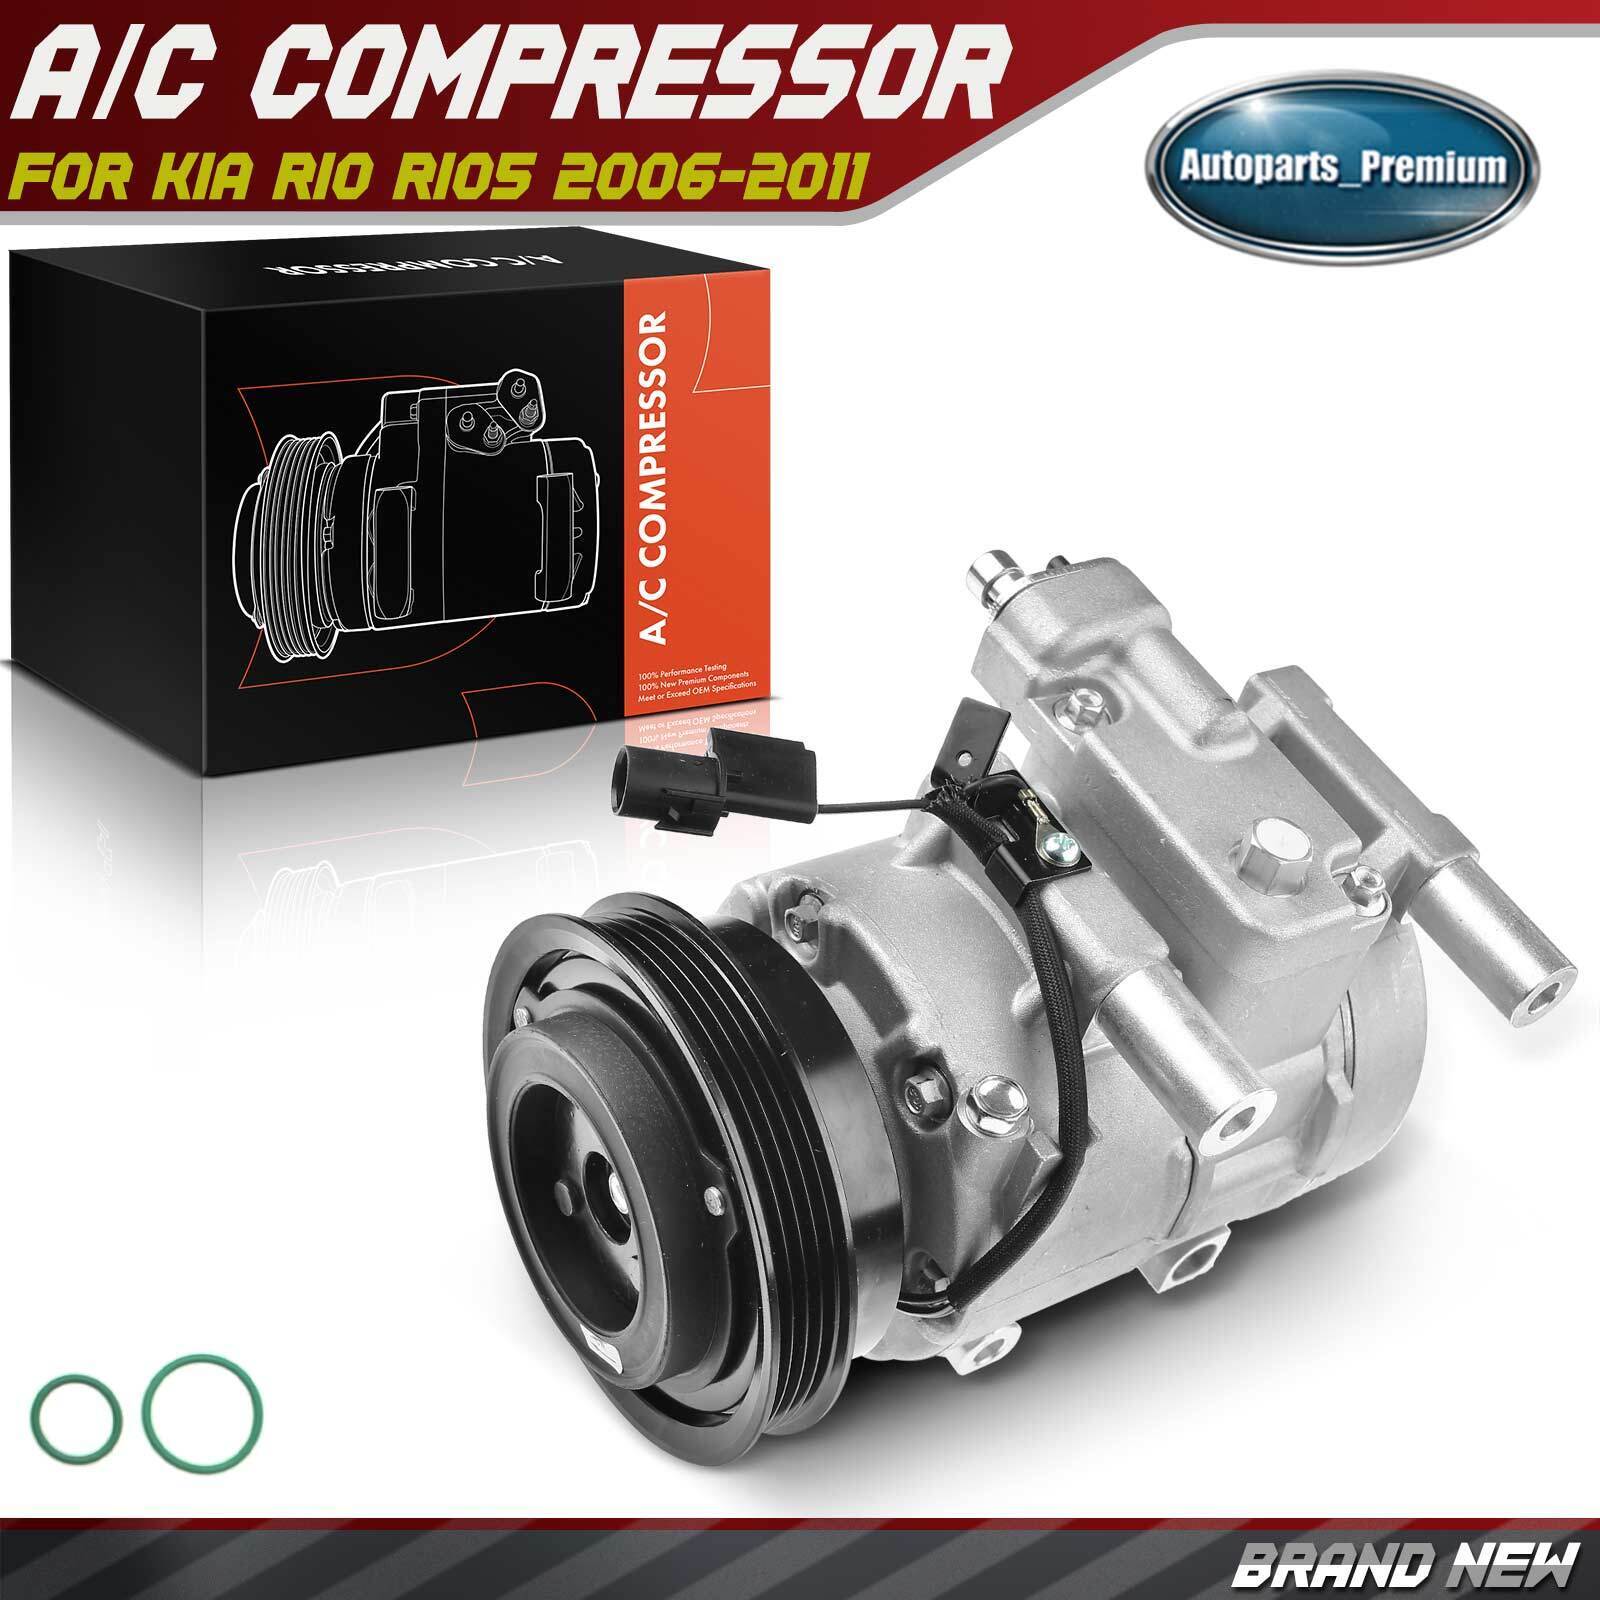 New AC A/C Compressor with Clutch for Kia Rio Rio5 2006-2011 L4 1.6L 977011G010